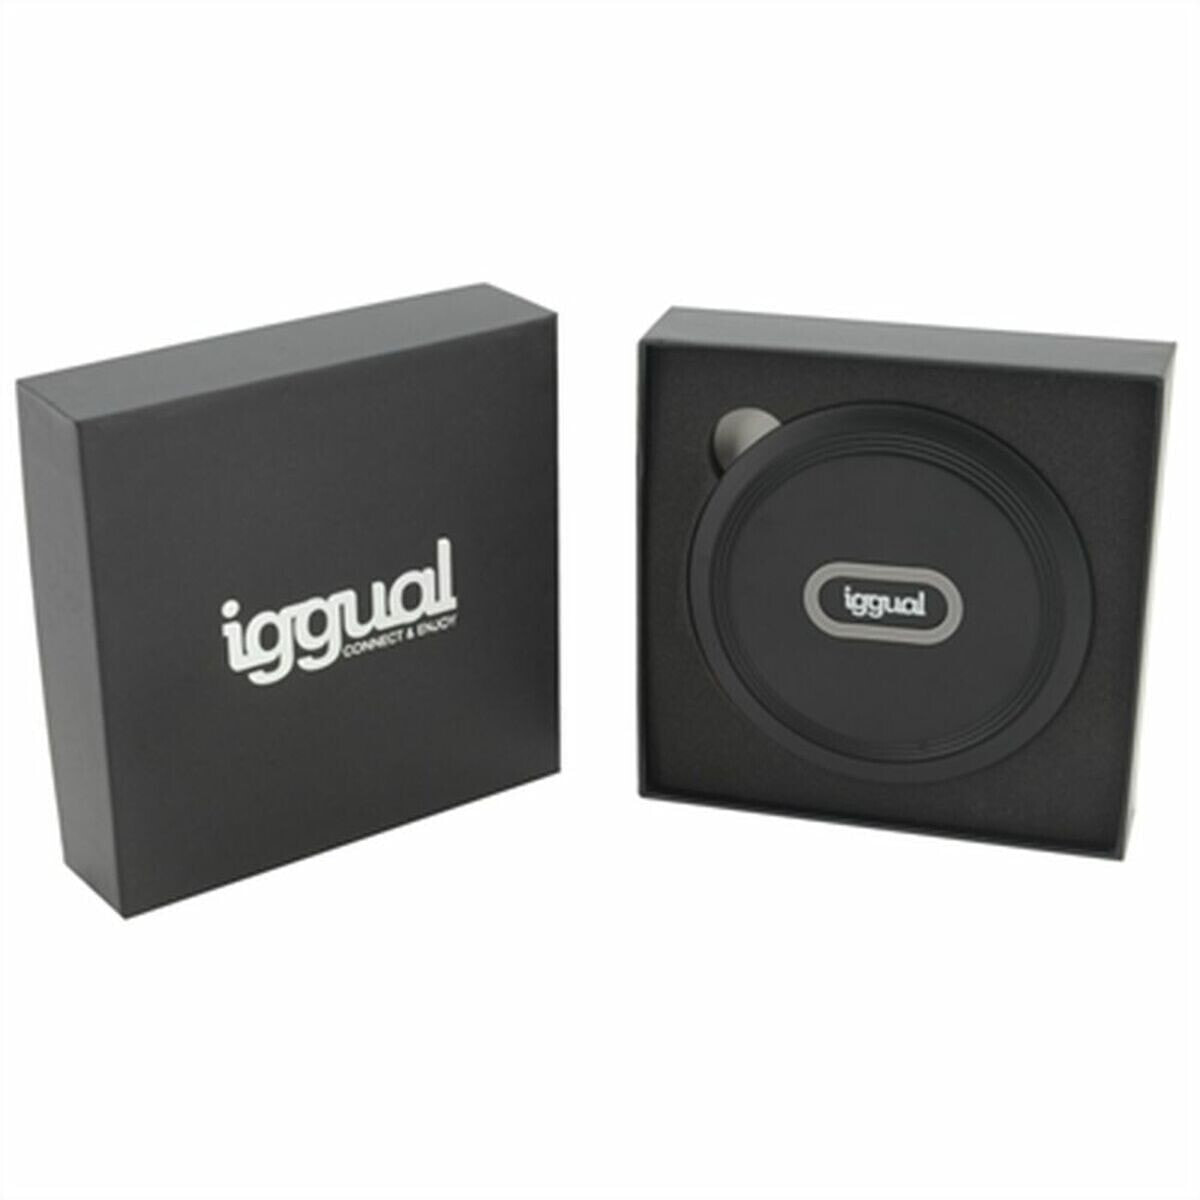 iggual IGG317099 зарядное устройство для мобильных устройств Универсальная Серый USB Беспроводная зарядка Быстрая зарядка Для помещений